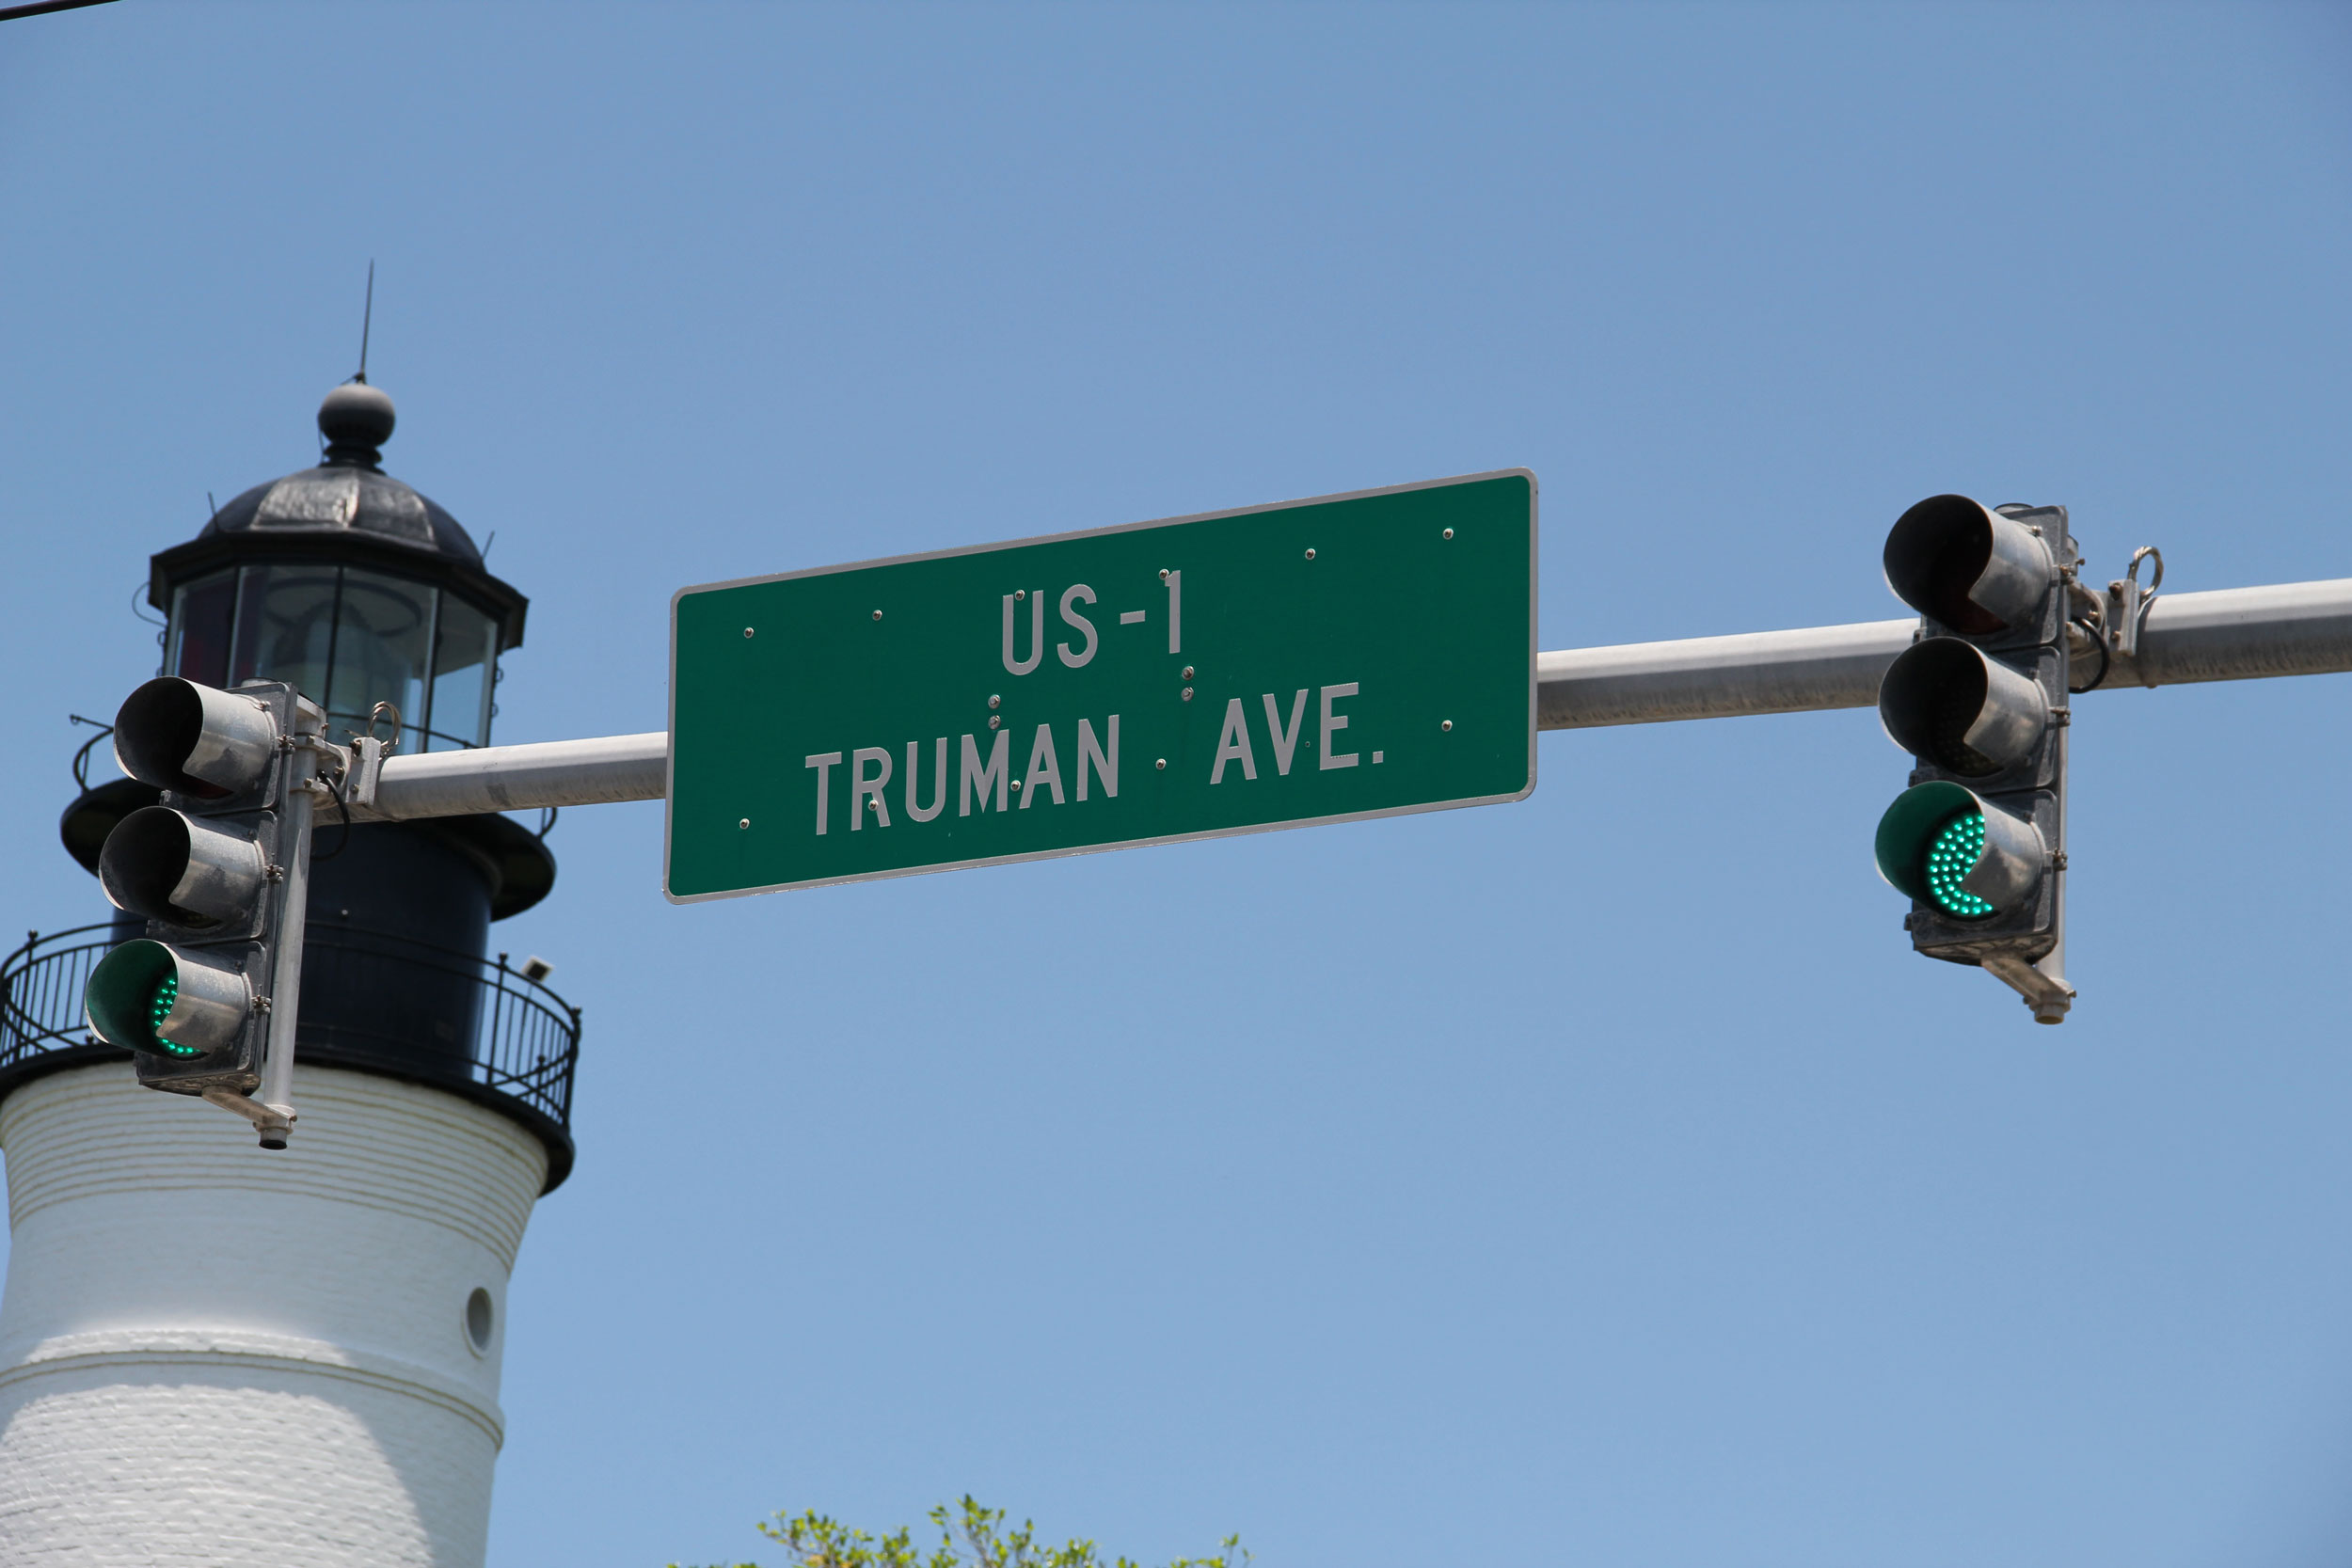 Trueman-Ave